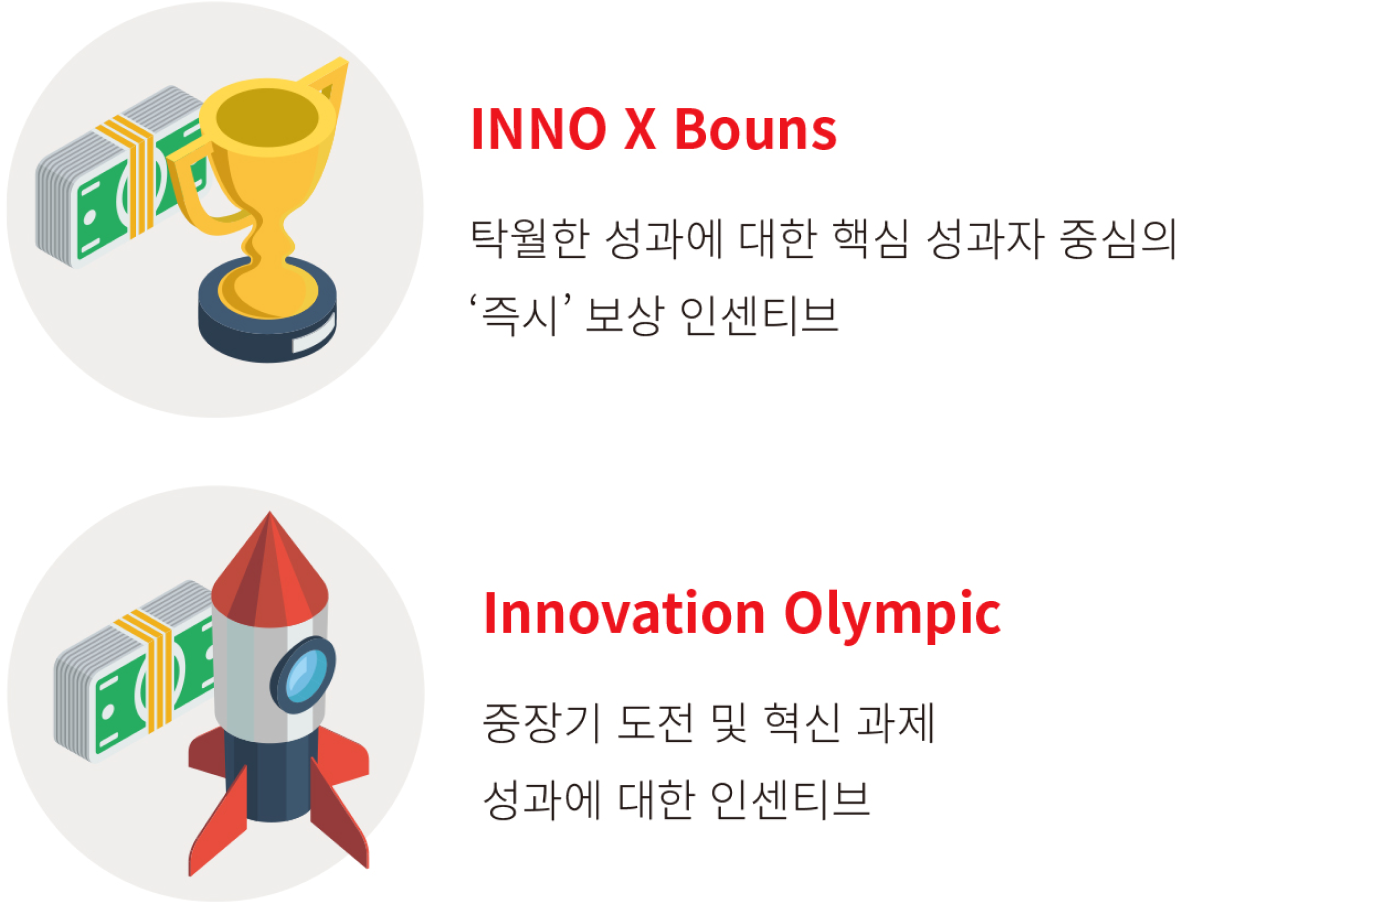 INNO X Bouns 탁월한 성과에 대한 핵심 성과자 중심의 '즉시’ 보상 인센티브, Innovation Olympic 중장기 도전 및 혁신 과제 성과에 대한 인센티브